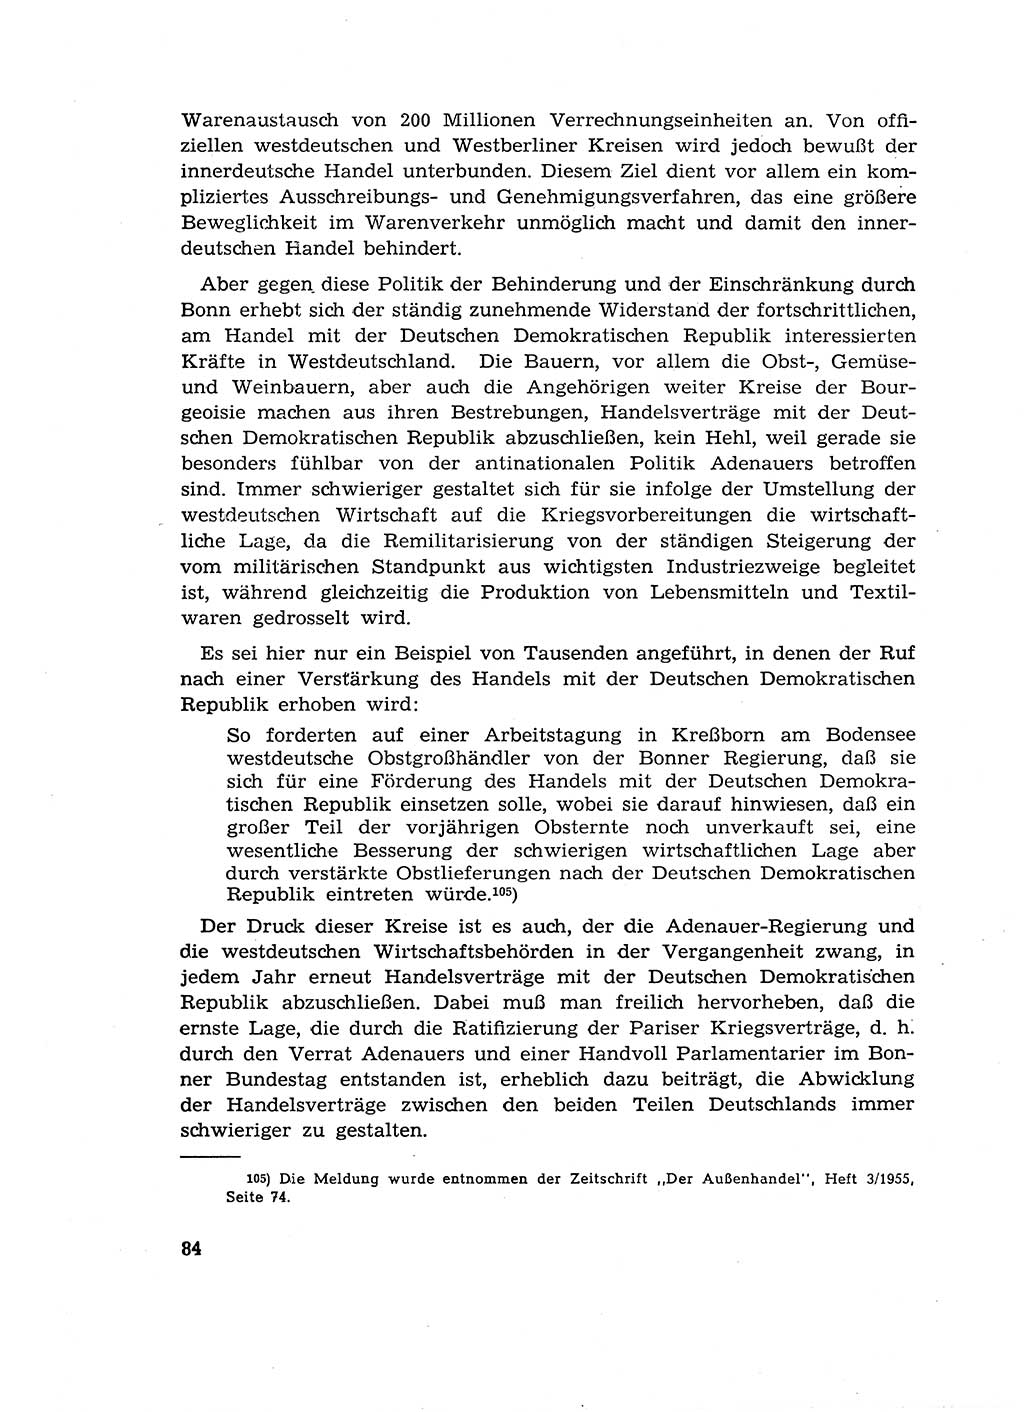 Materialien zum Strafrecht, Besonderer Teil [Deutsche Demokratische Republik (DDR)] 1955, Seite 84 (Mat. Strafr. BT DDR 1955, S. 84)